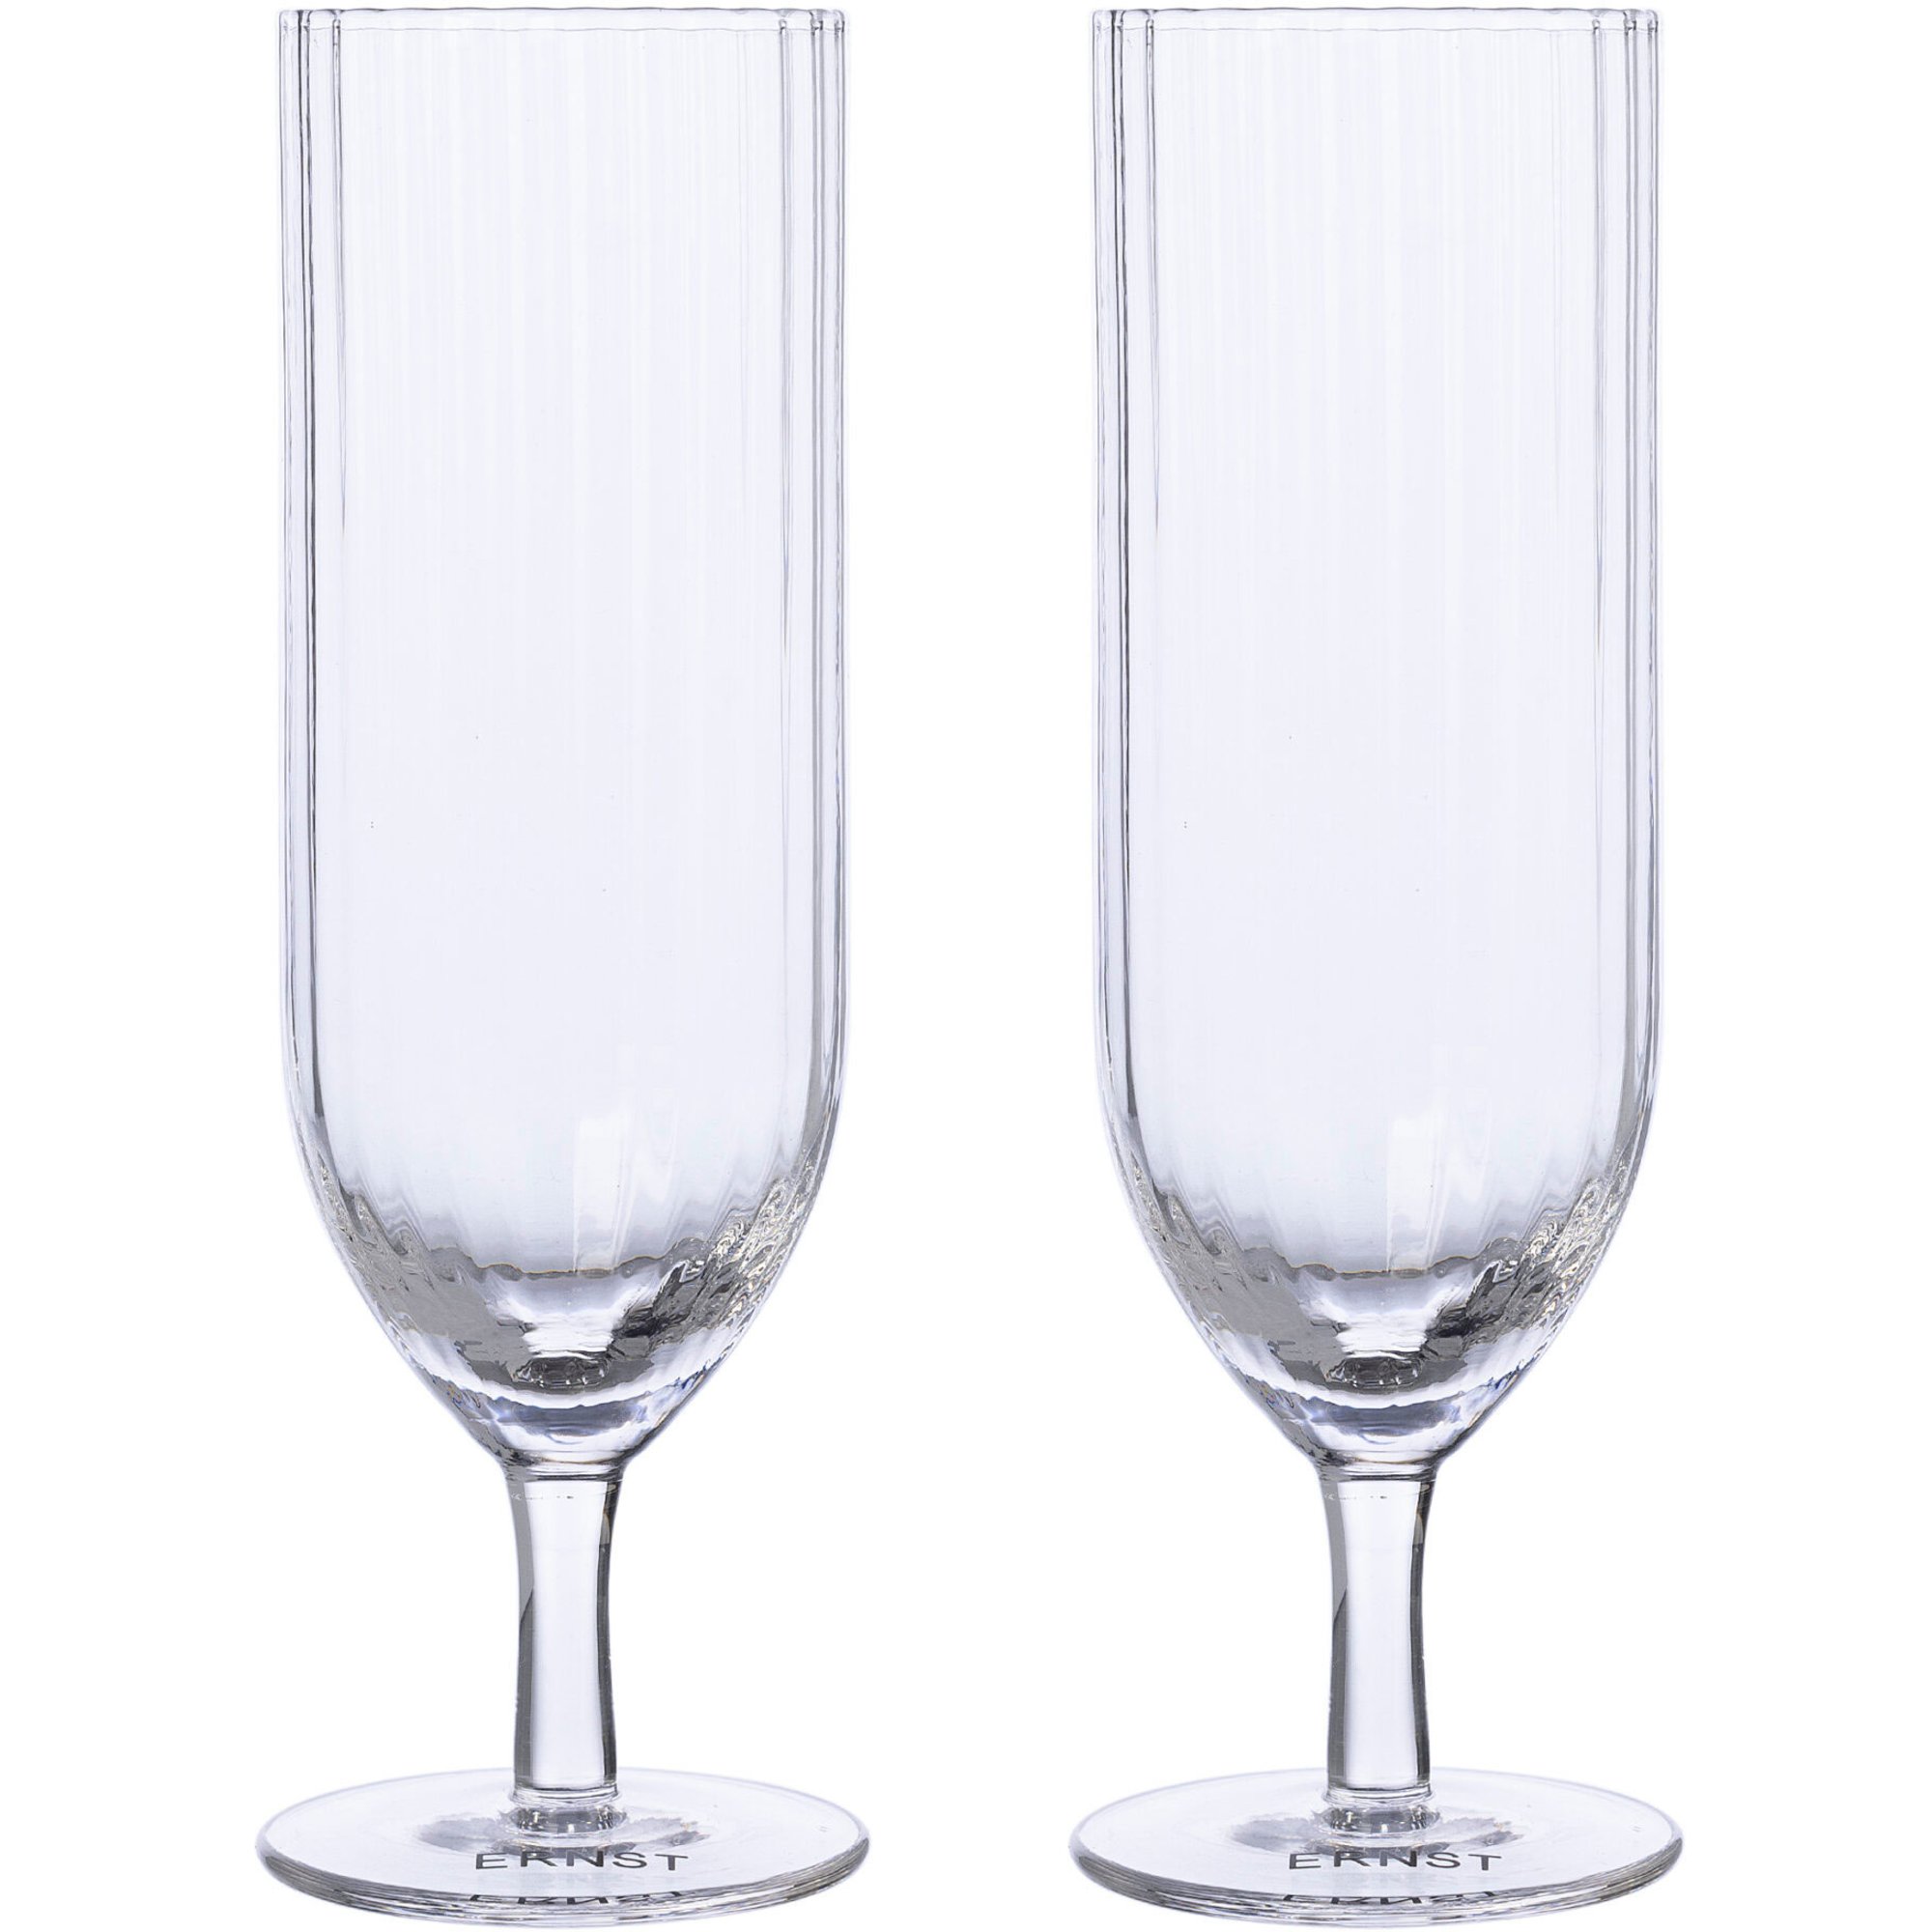 Ernst Champagneglas 2-pack